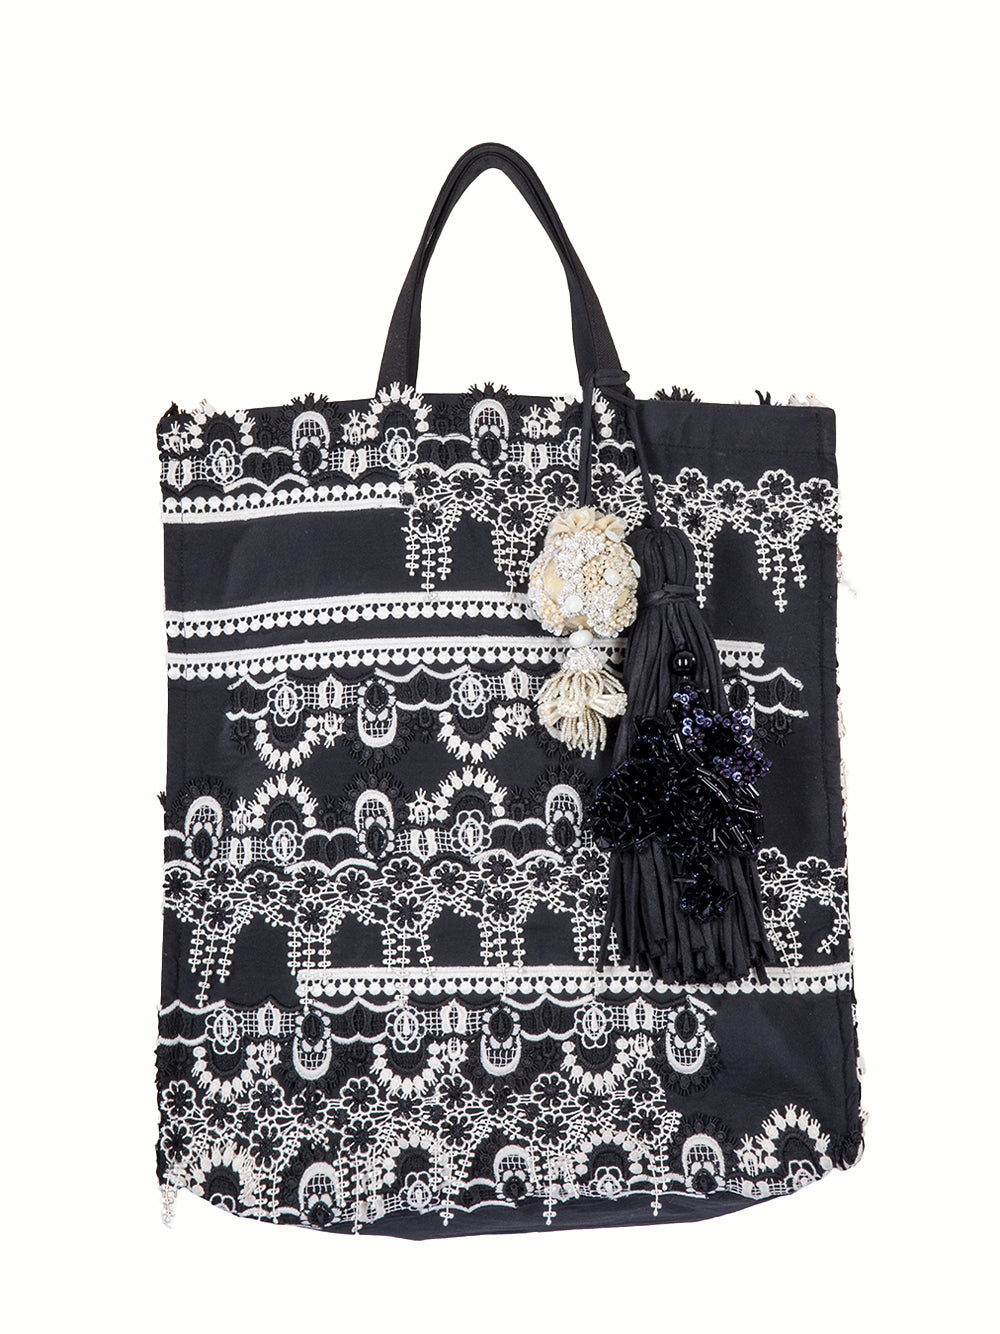 Embellished Tote Bag Black-white